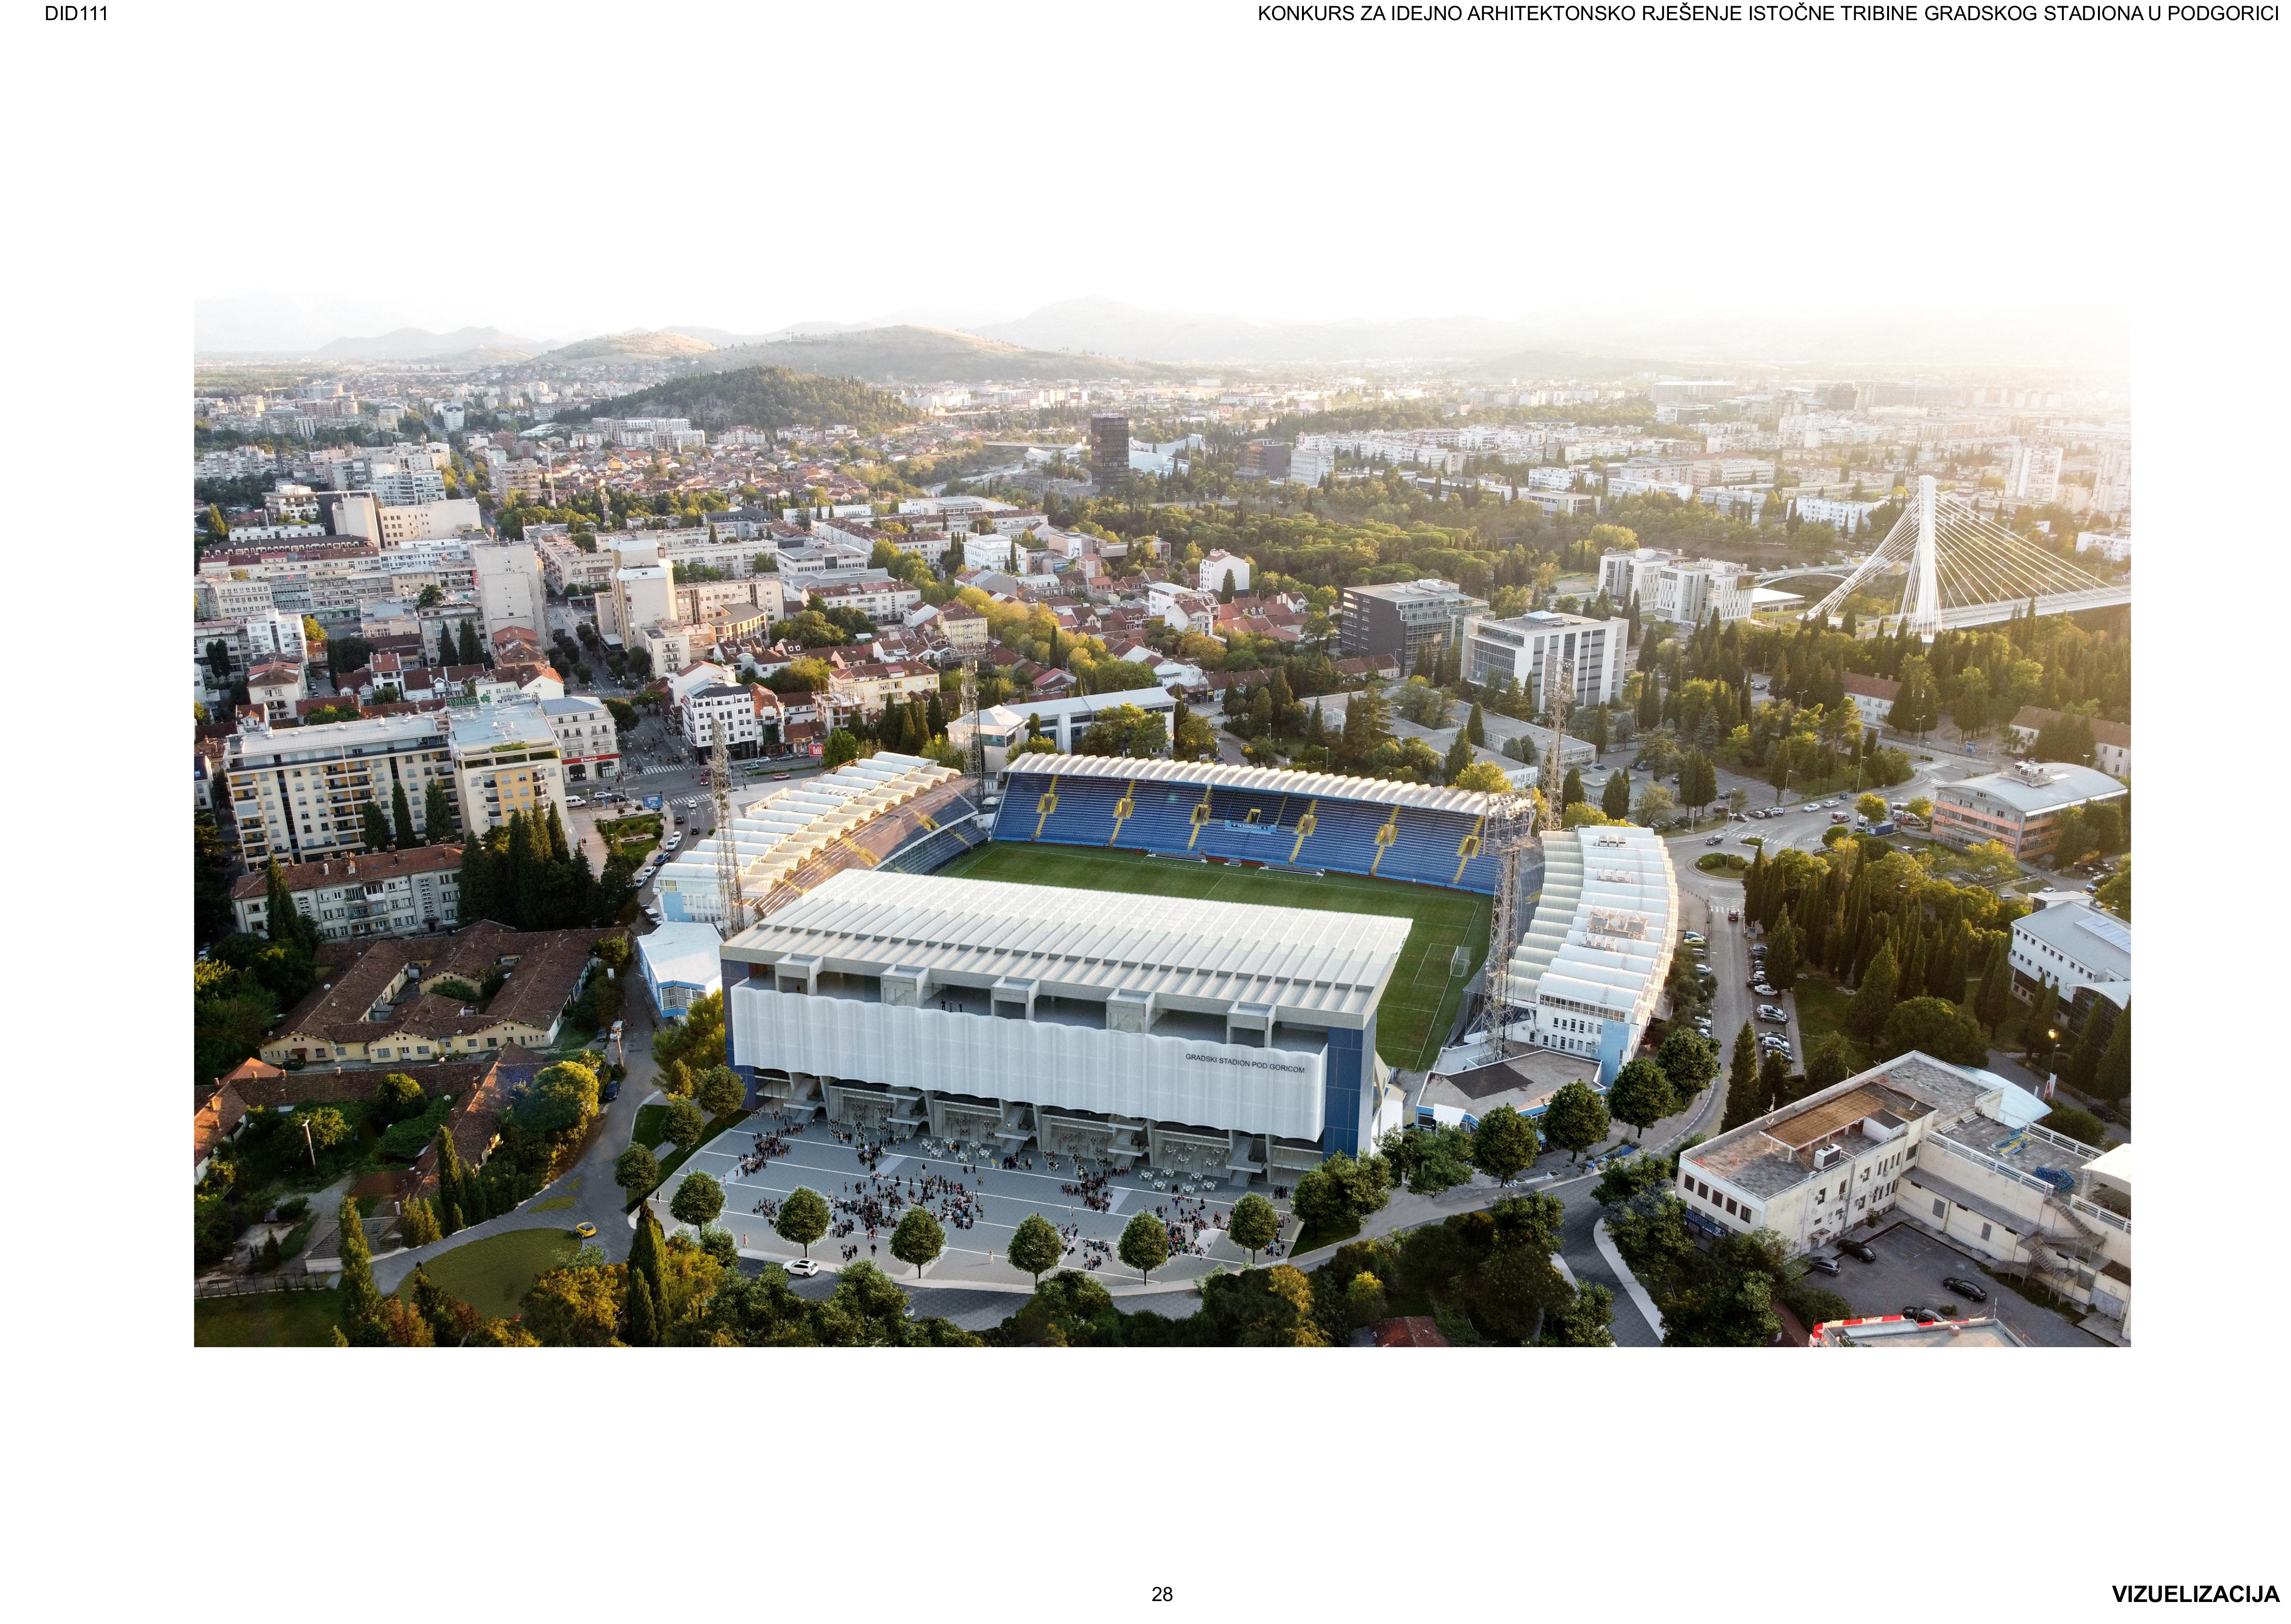 Završen konkurs za idejno rješenje istočne tribine Gradskog stadiona u Podgorici